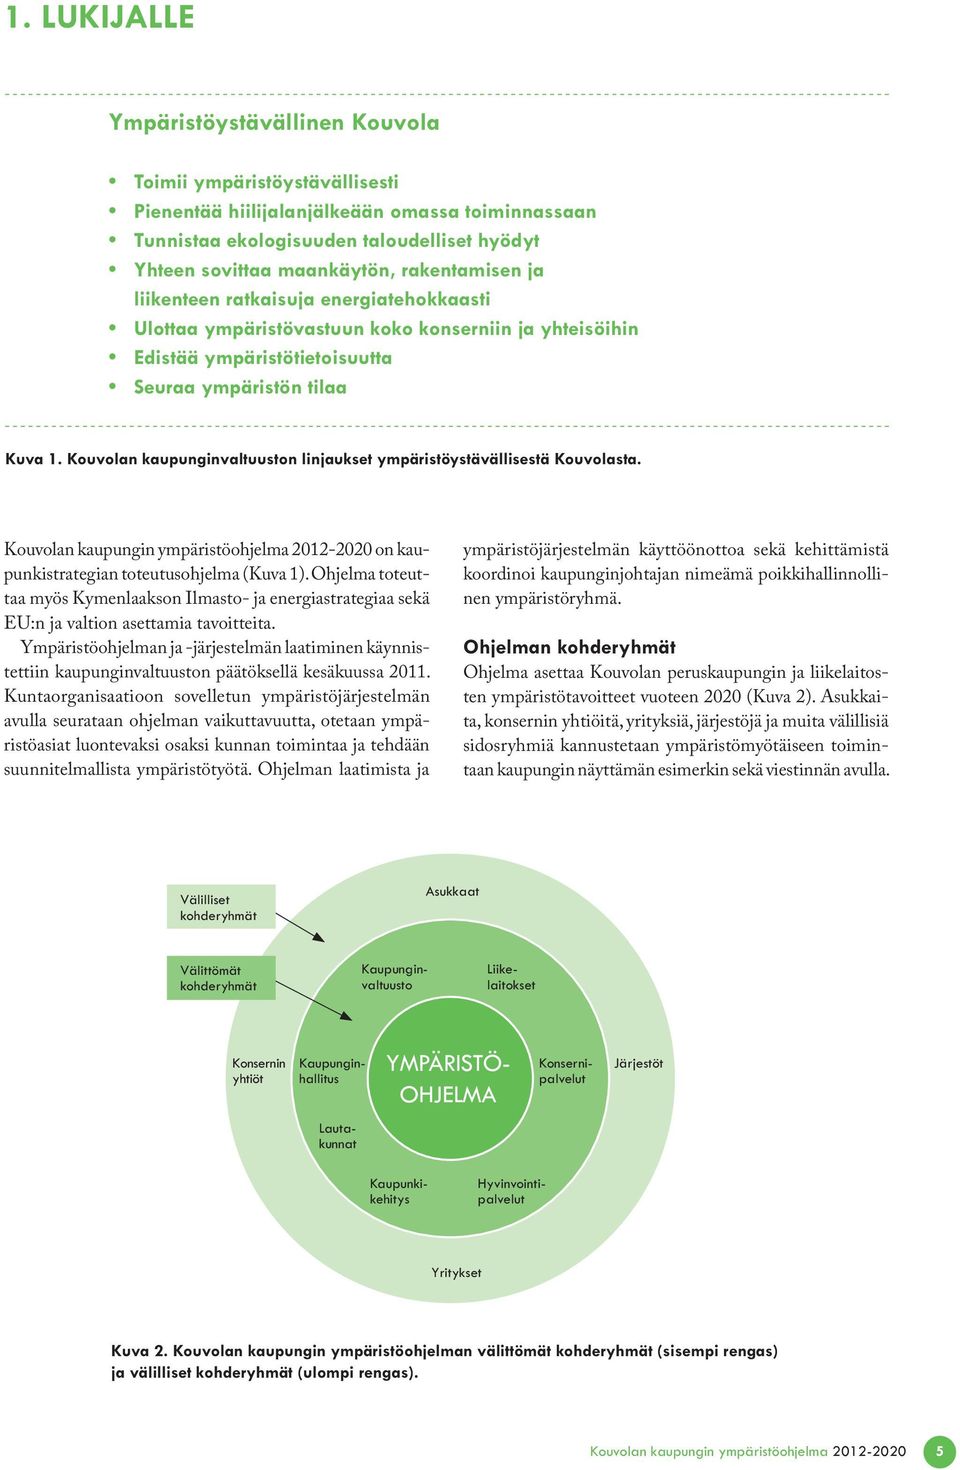 Kouvolan kaupunginvaltuuston linjaukset ympäristöystävällisestä Kouvolasta. Kouvolan kaupungin ympäristöohjelma 2012-2020 on kaupunkistrategian toteutusohjelma (Kuva 1).